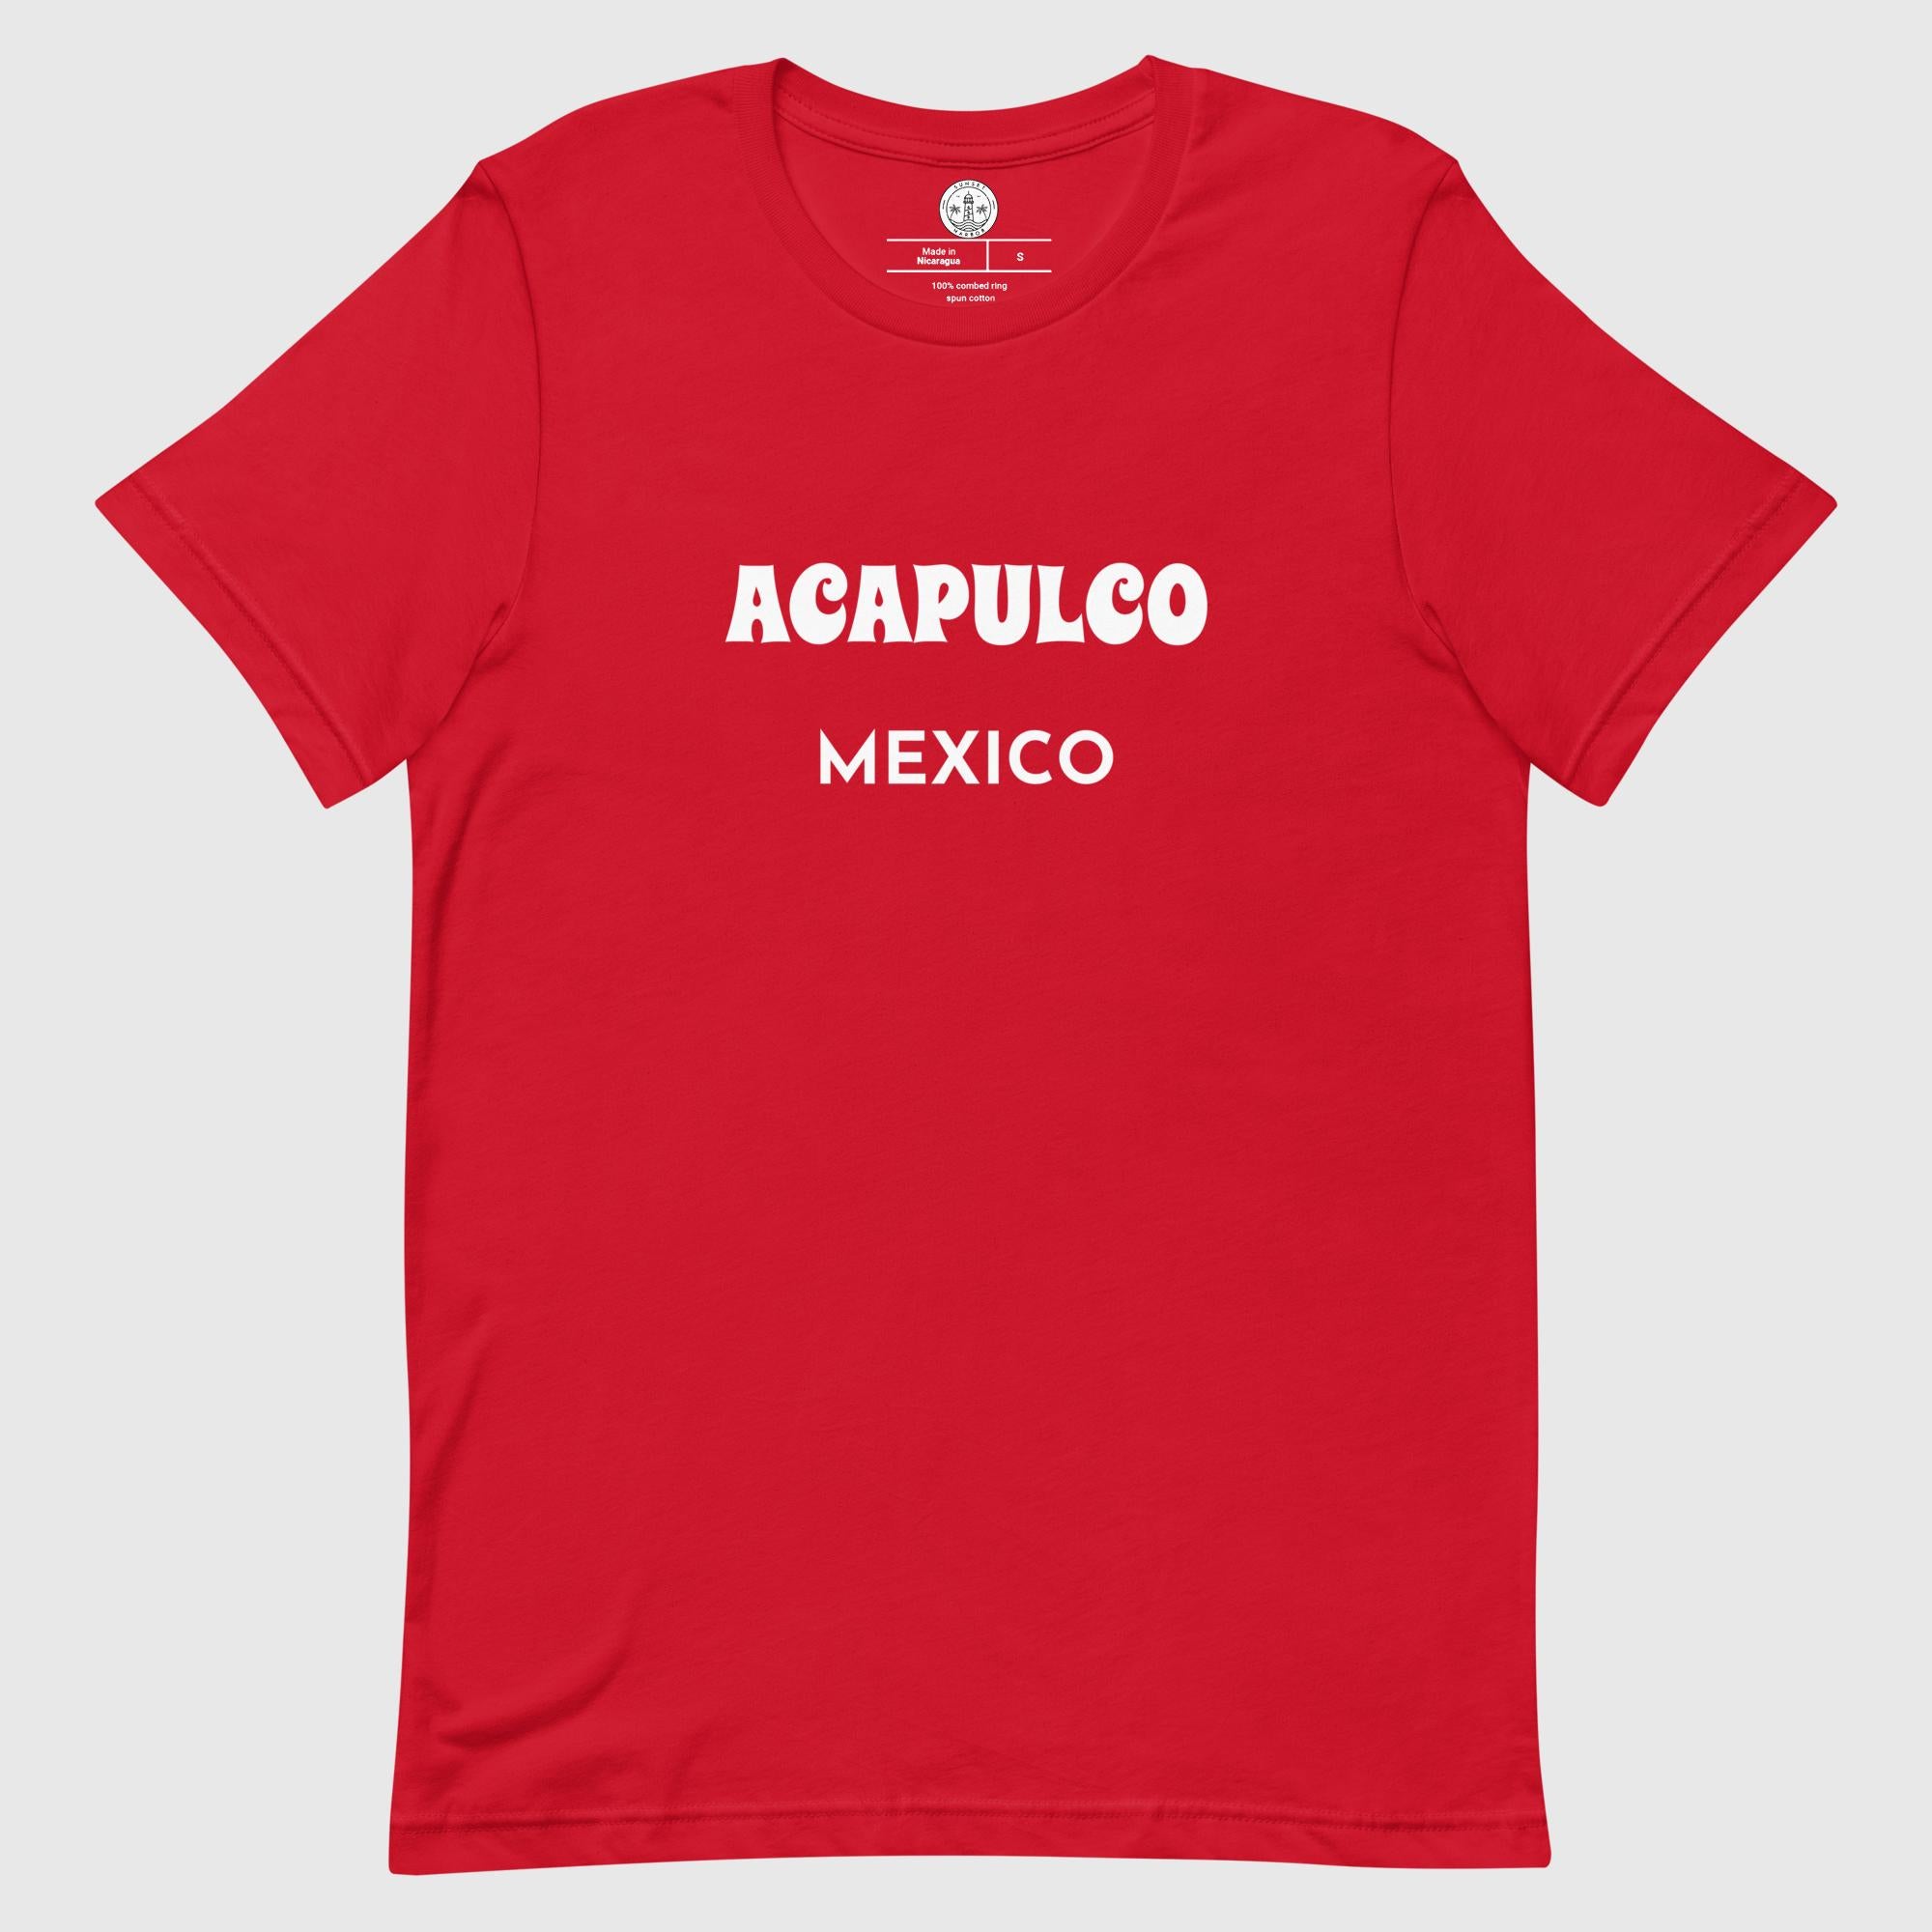 Camiseta unisex - Acapulco